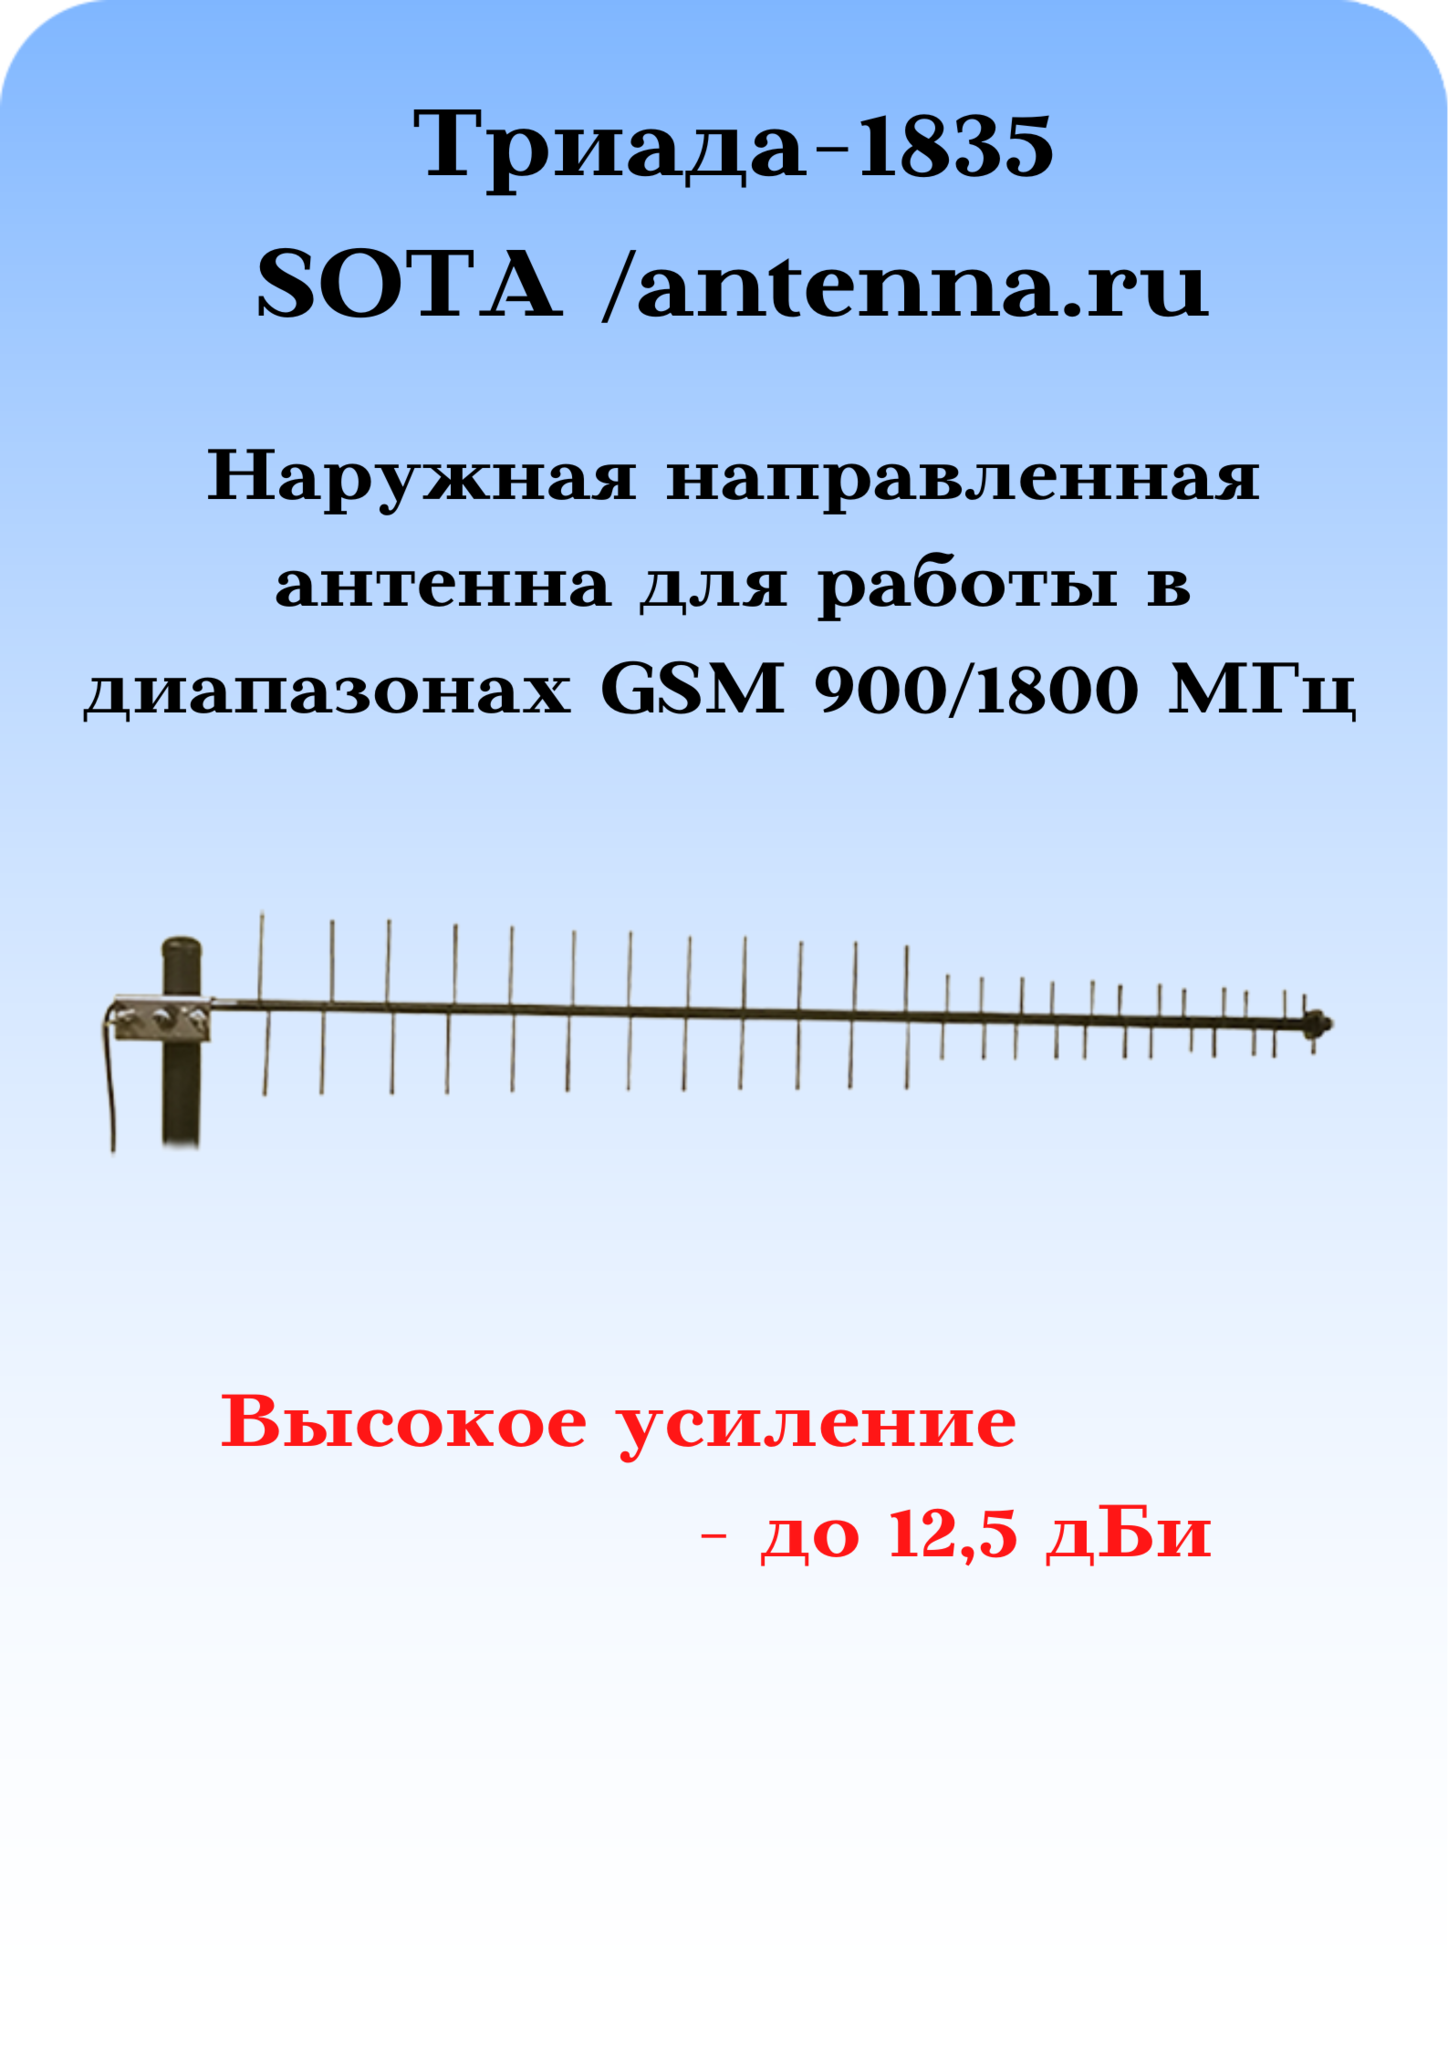 Триада-1835/antenna.ru  900/1800 МГц направленная на кронштейн с большим усилением